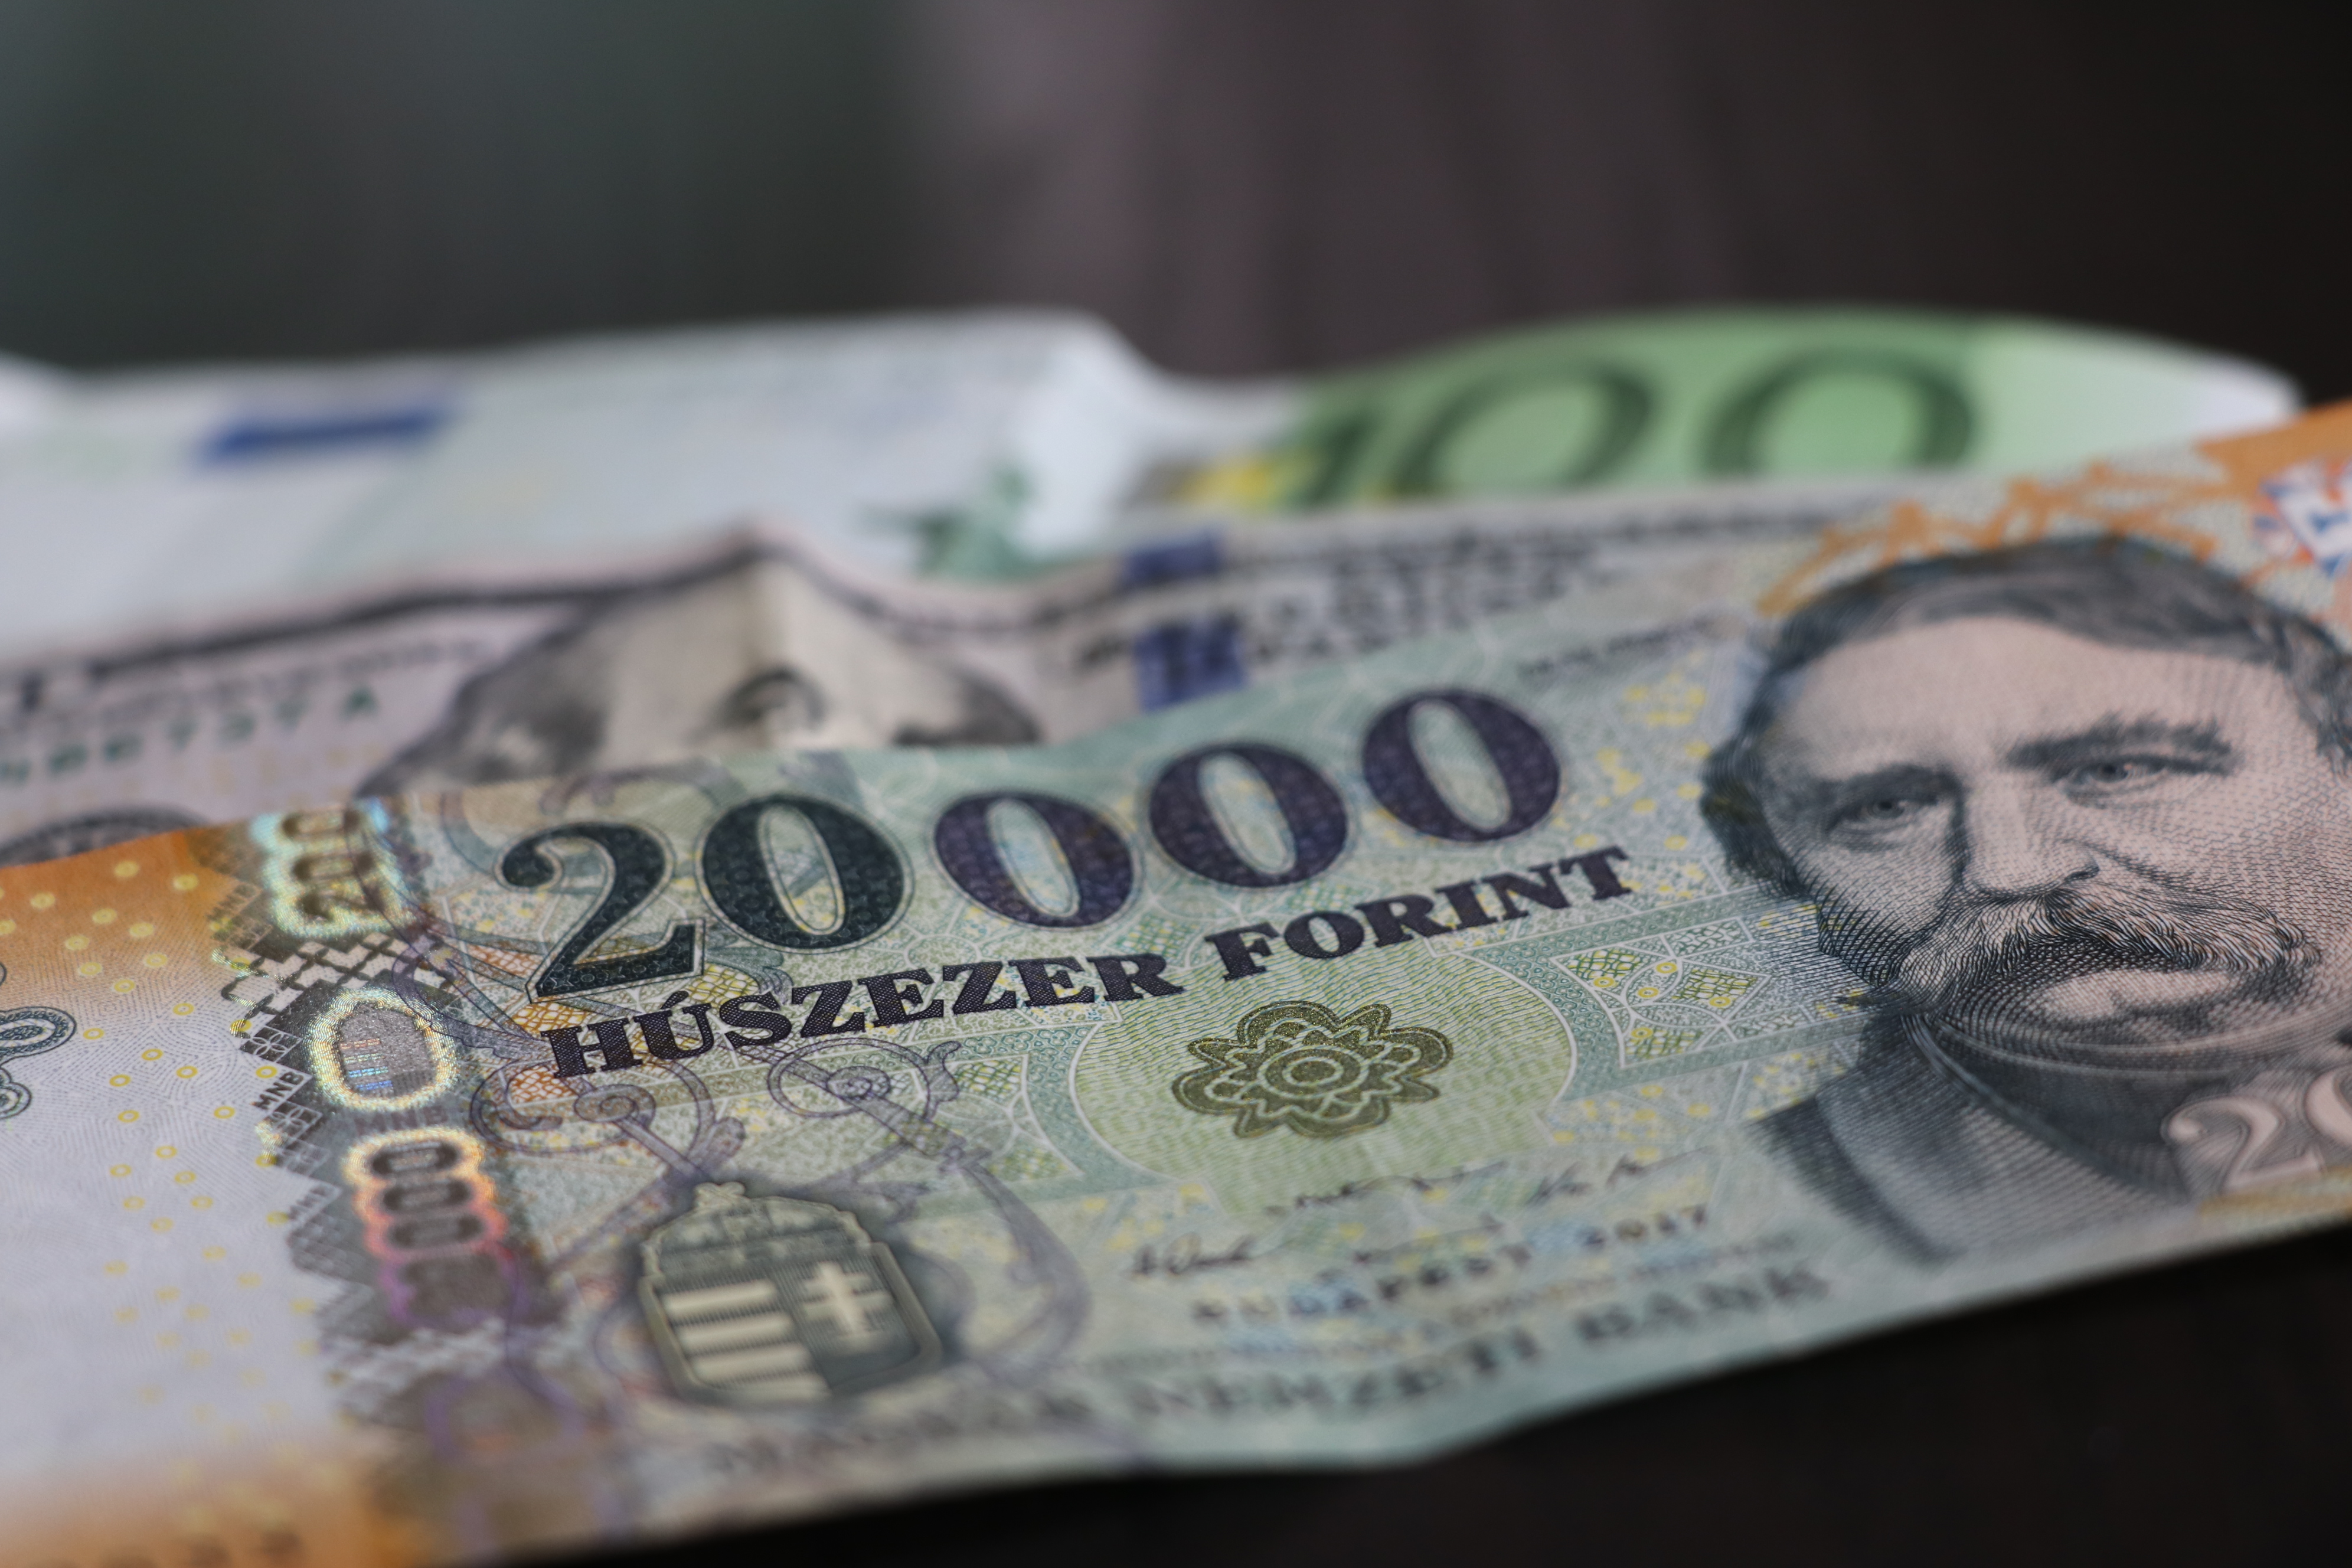 Kató alpár denní zprávy maďarsko forint dolary maďarsko